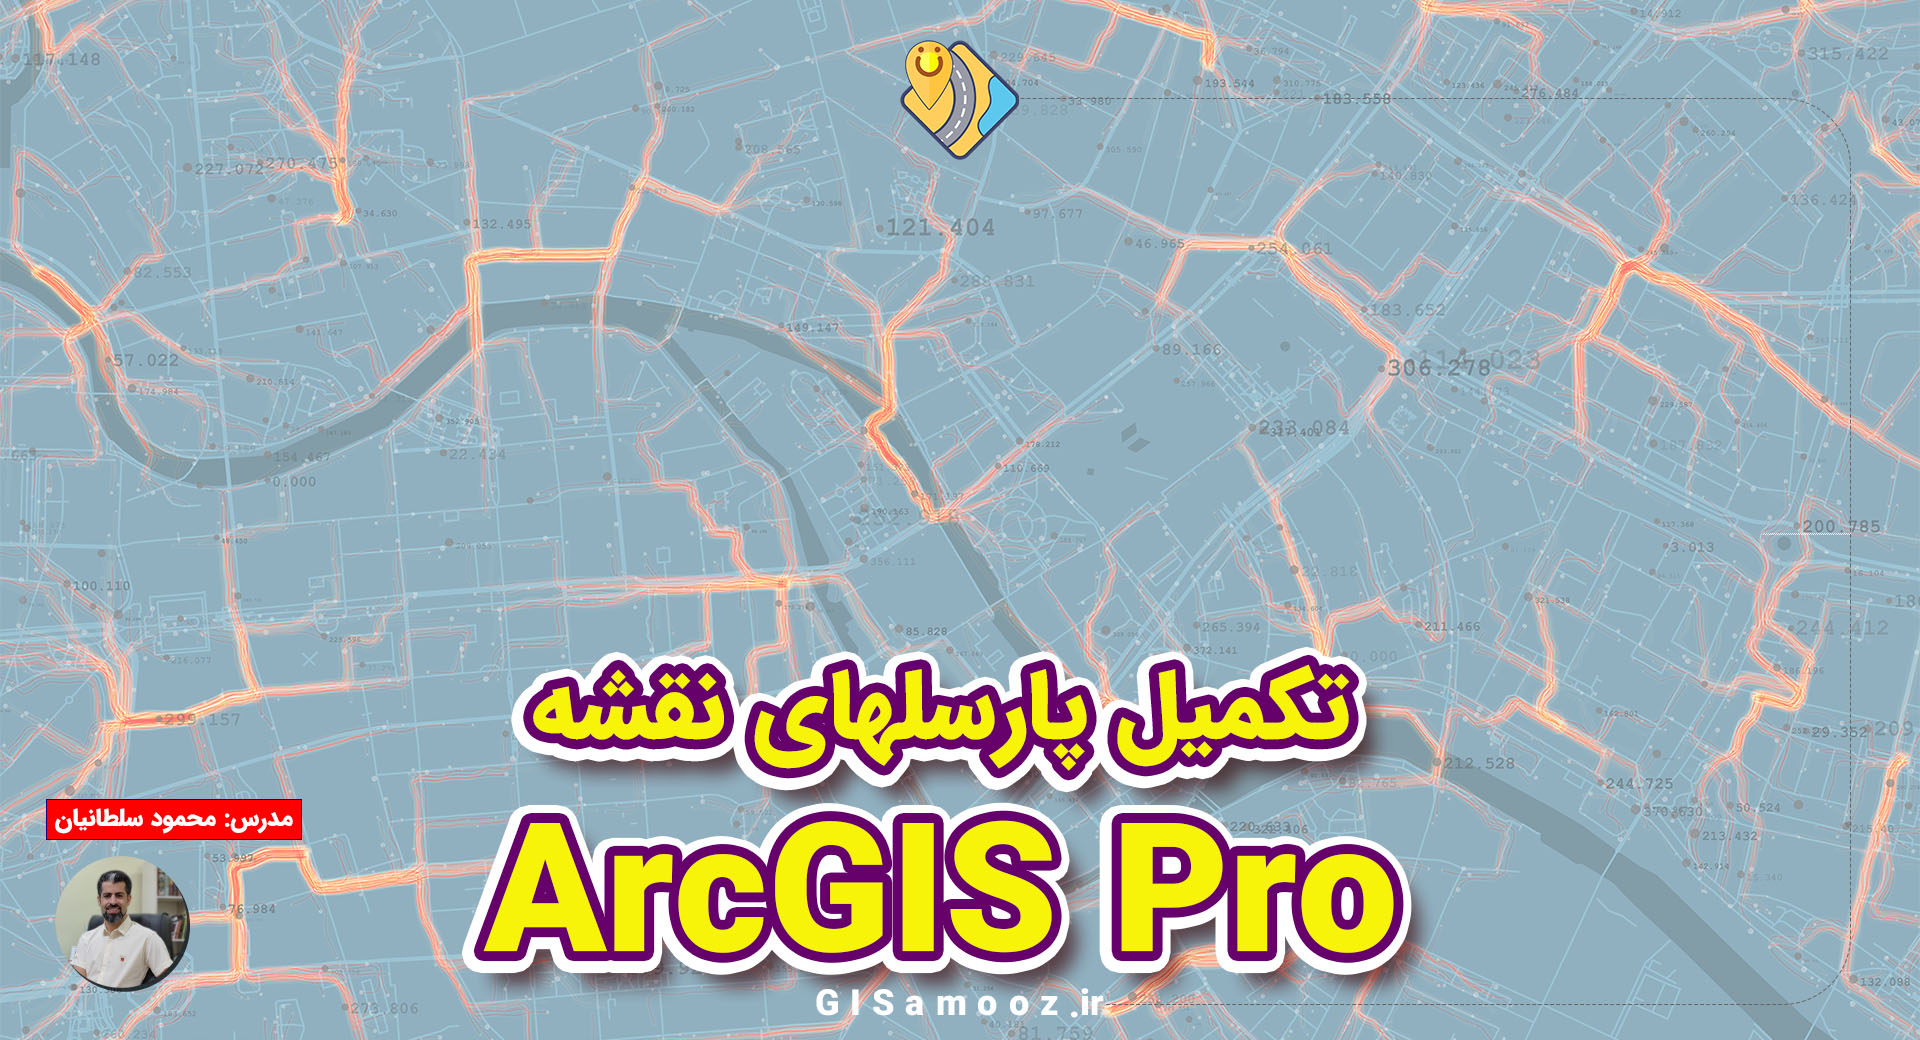 افزودن پارسلهای جدید به نقشه در ArcGIS Pro